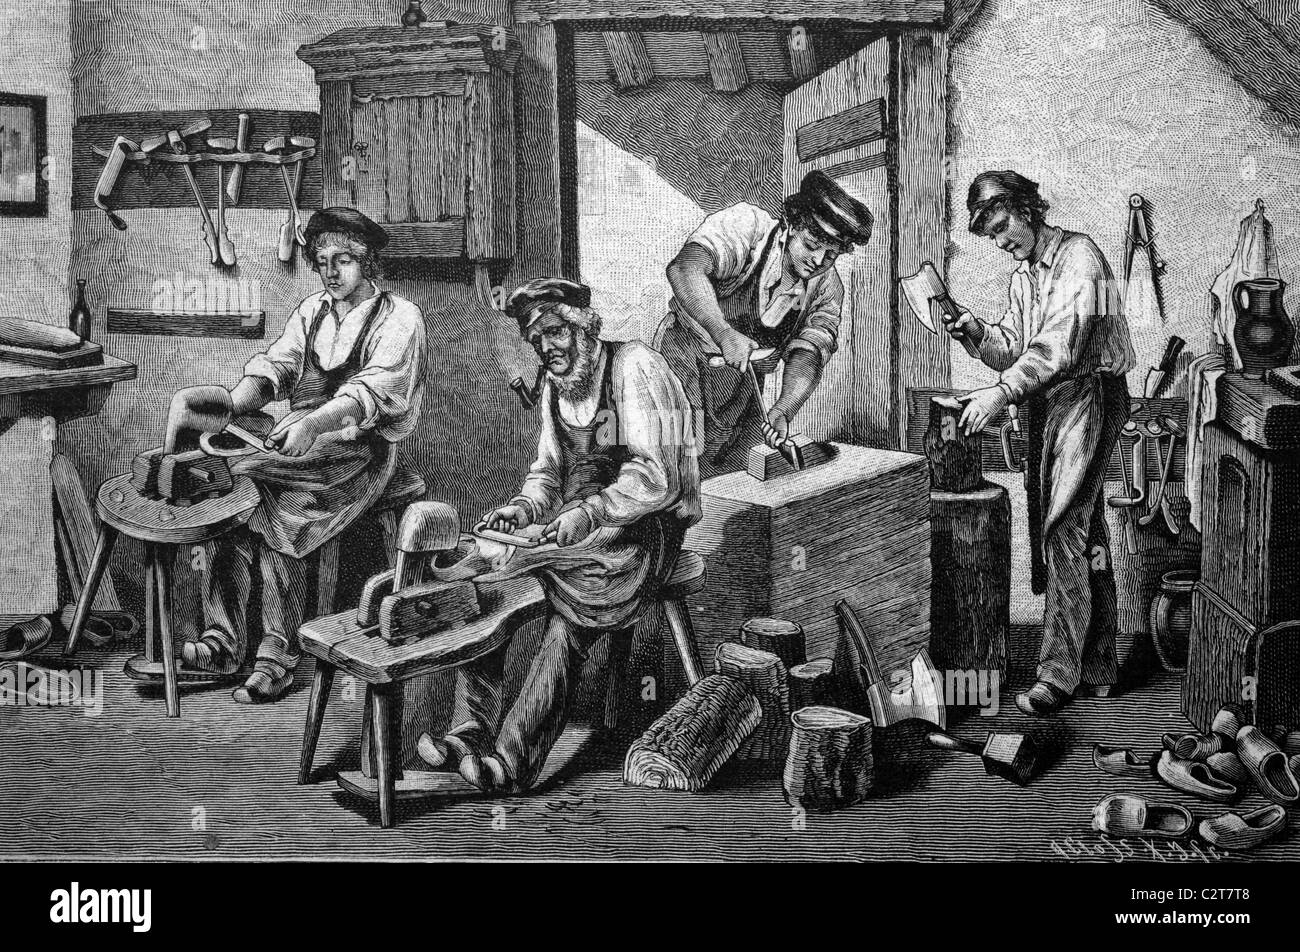 De l'atelier des sculpteurs de sabots de bois, illustration historique, vers 1886 Banque D'Images